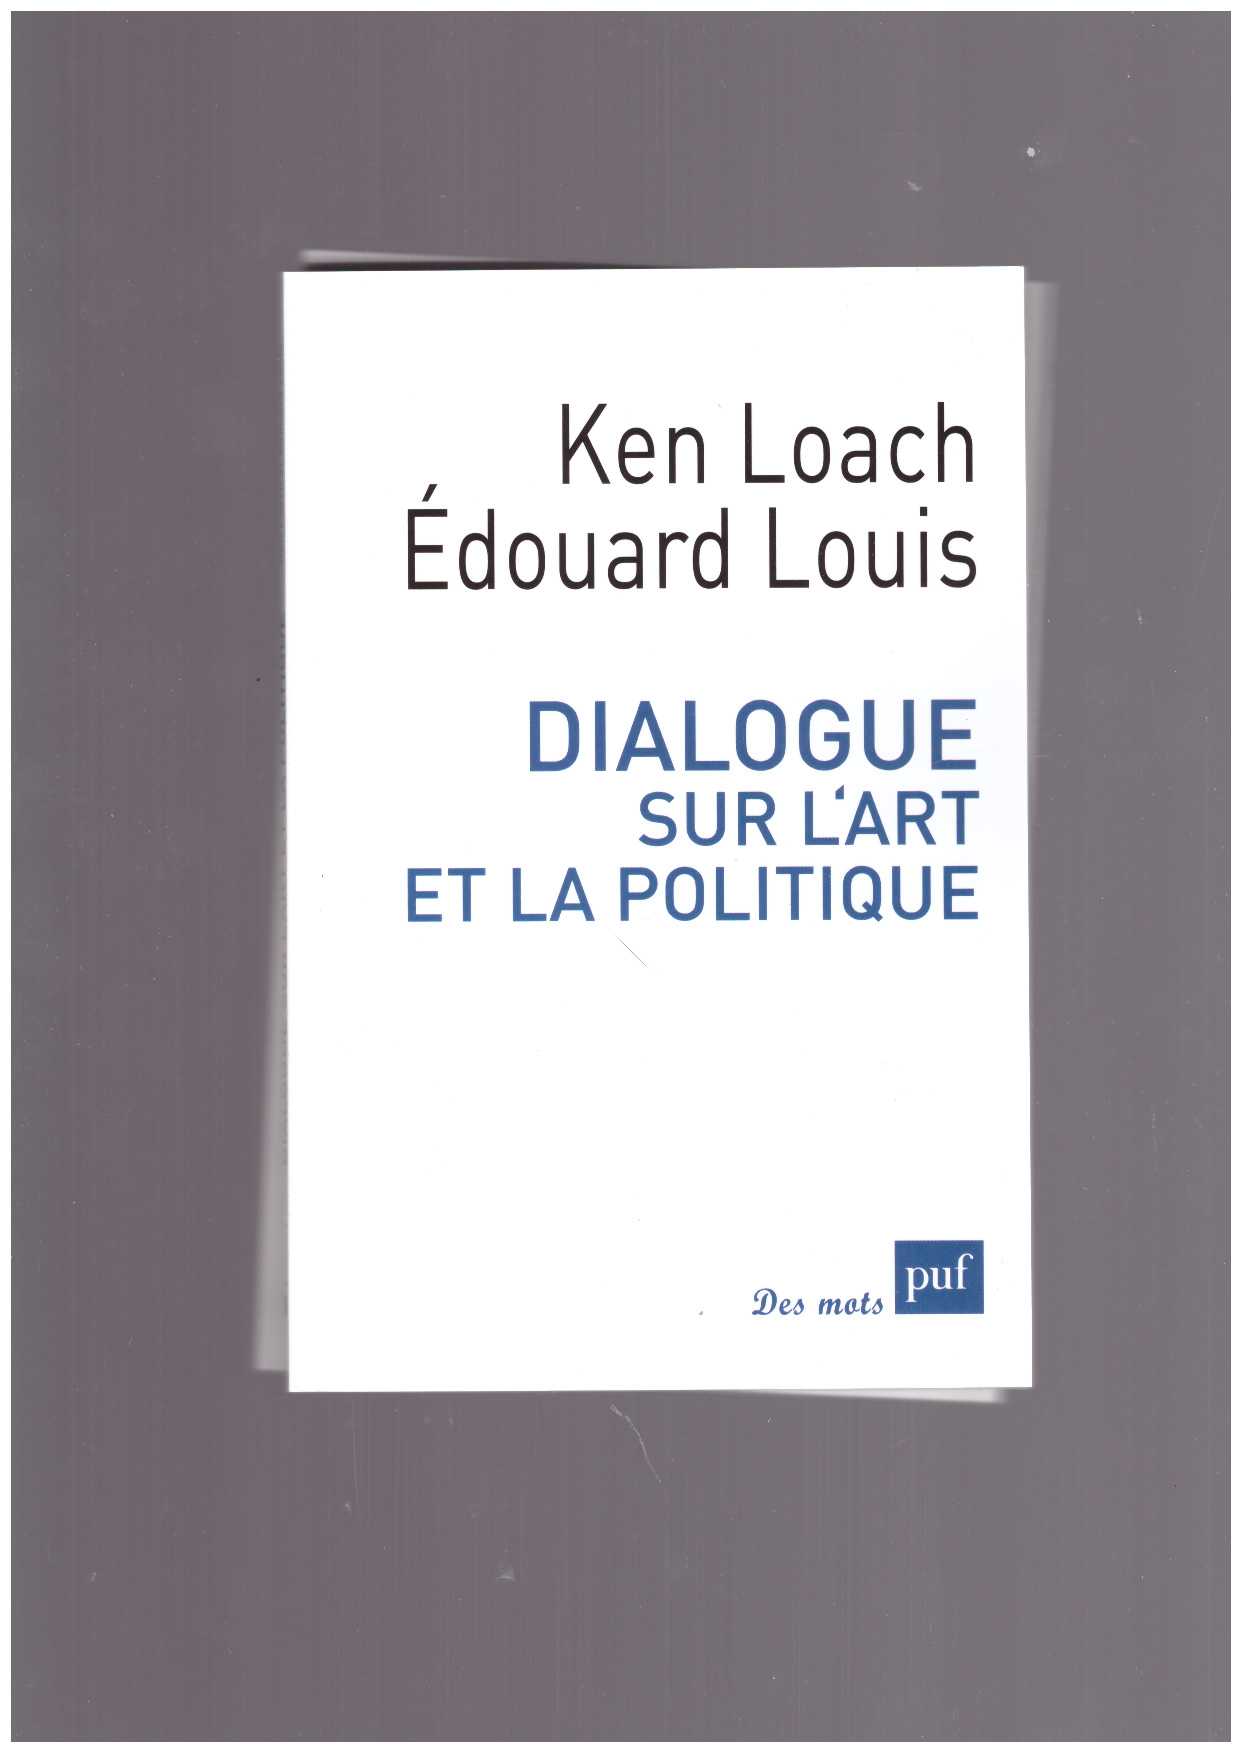 LOACH, Ken; LOUIS, Edouard - Dialogue sur l’art et la politique